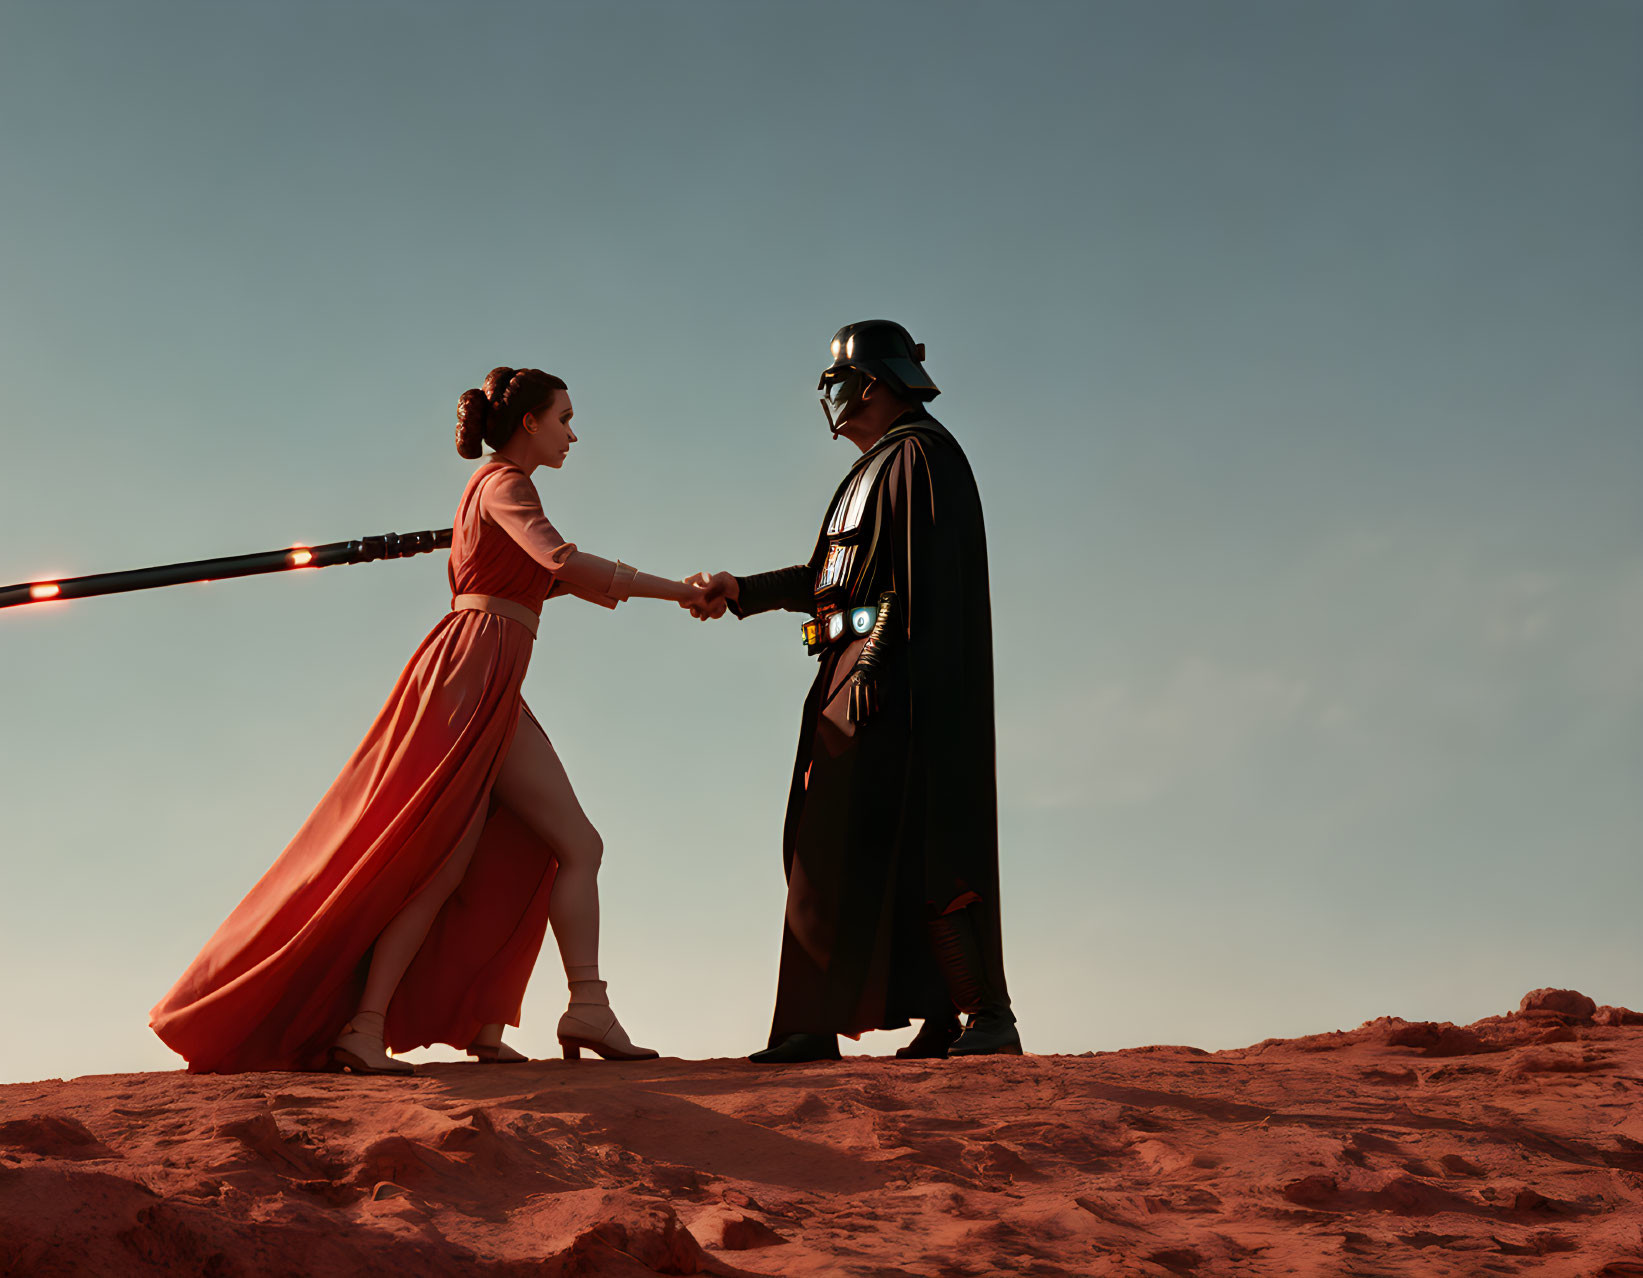 Princess Leia battling Darth Vader